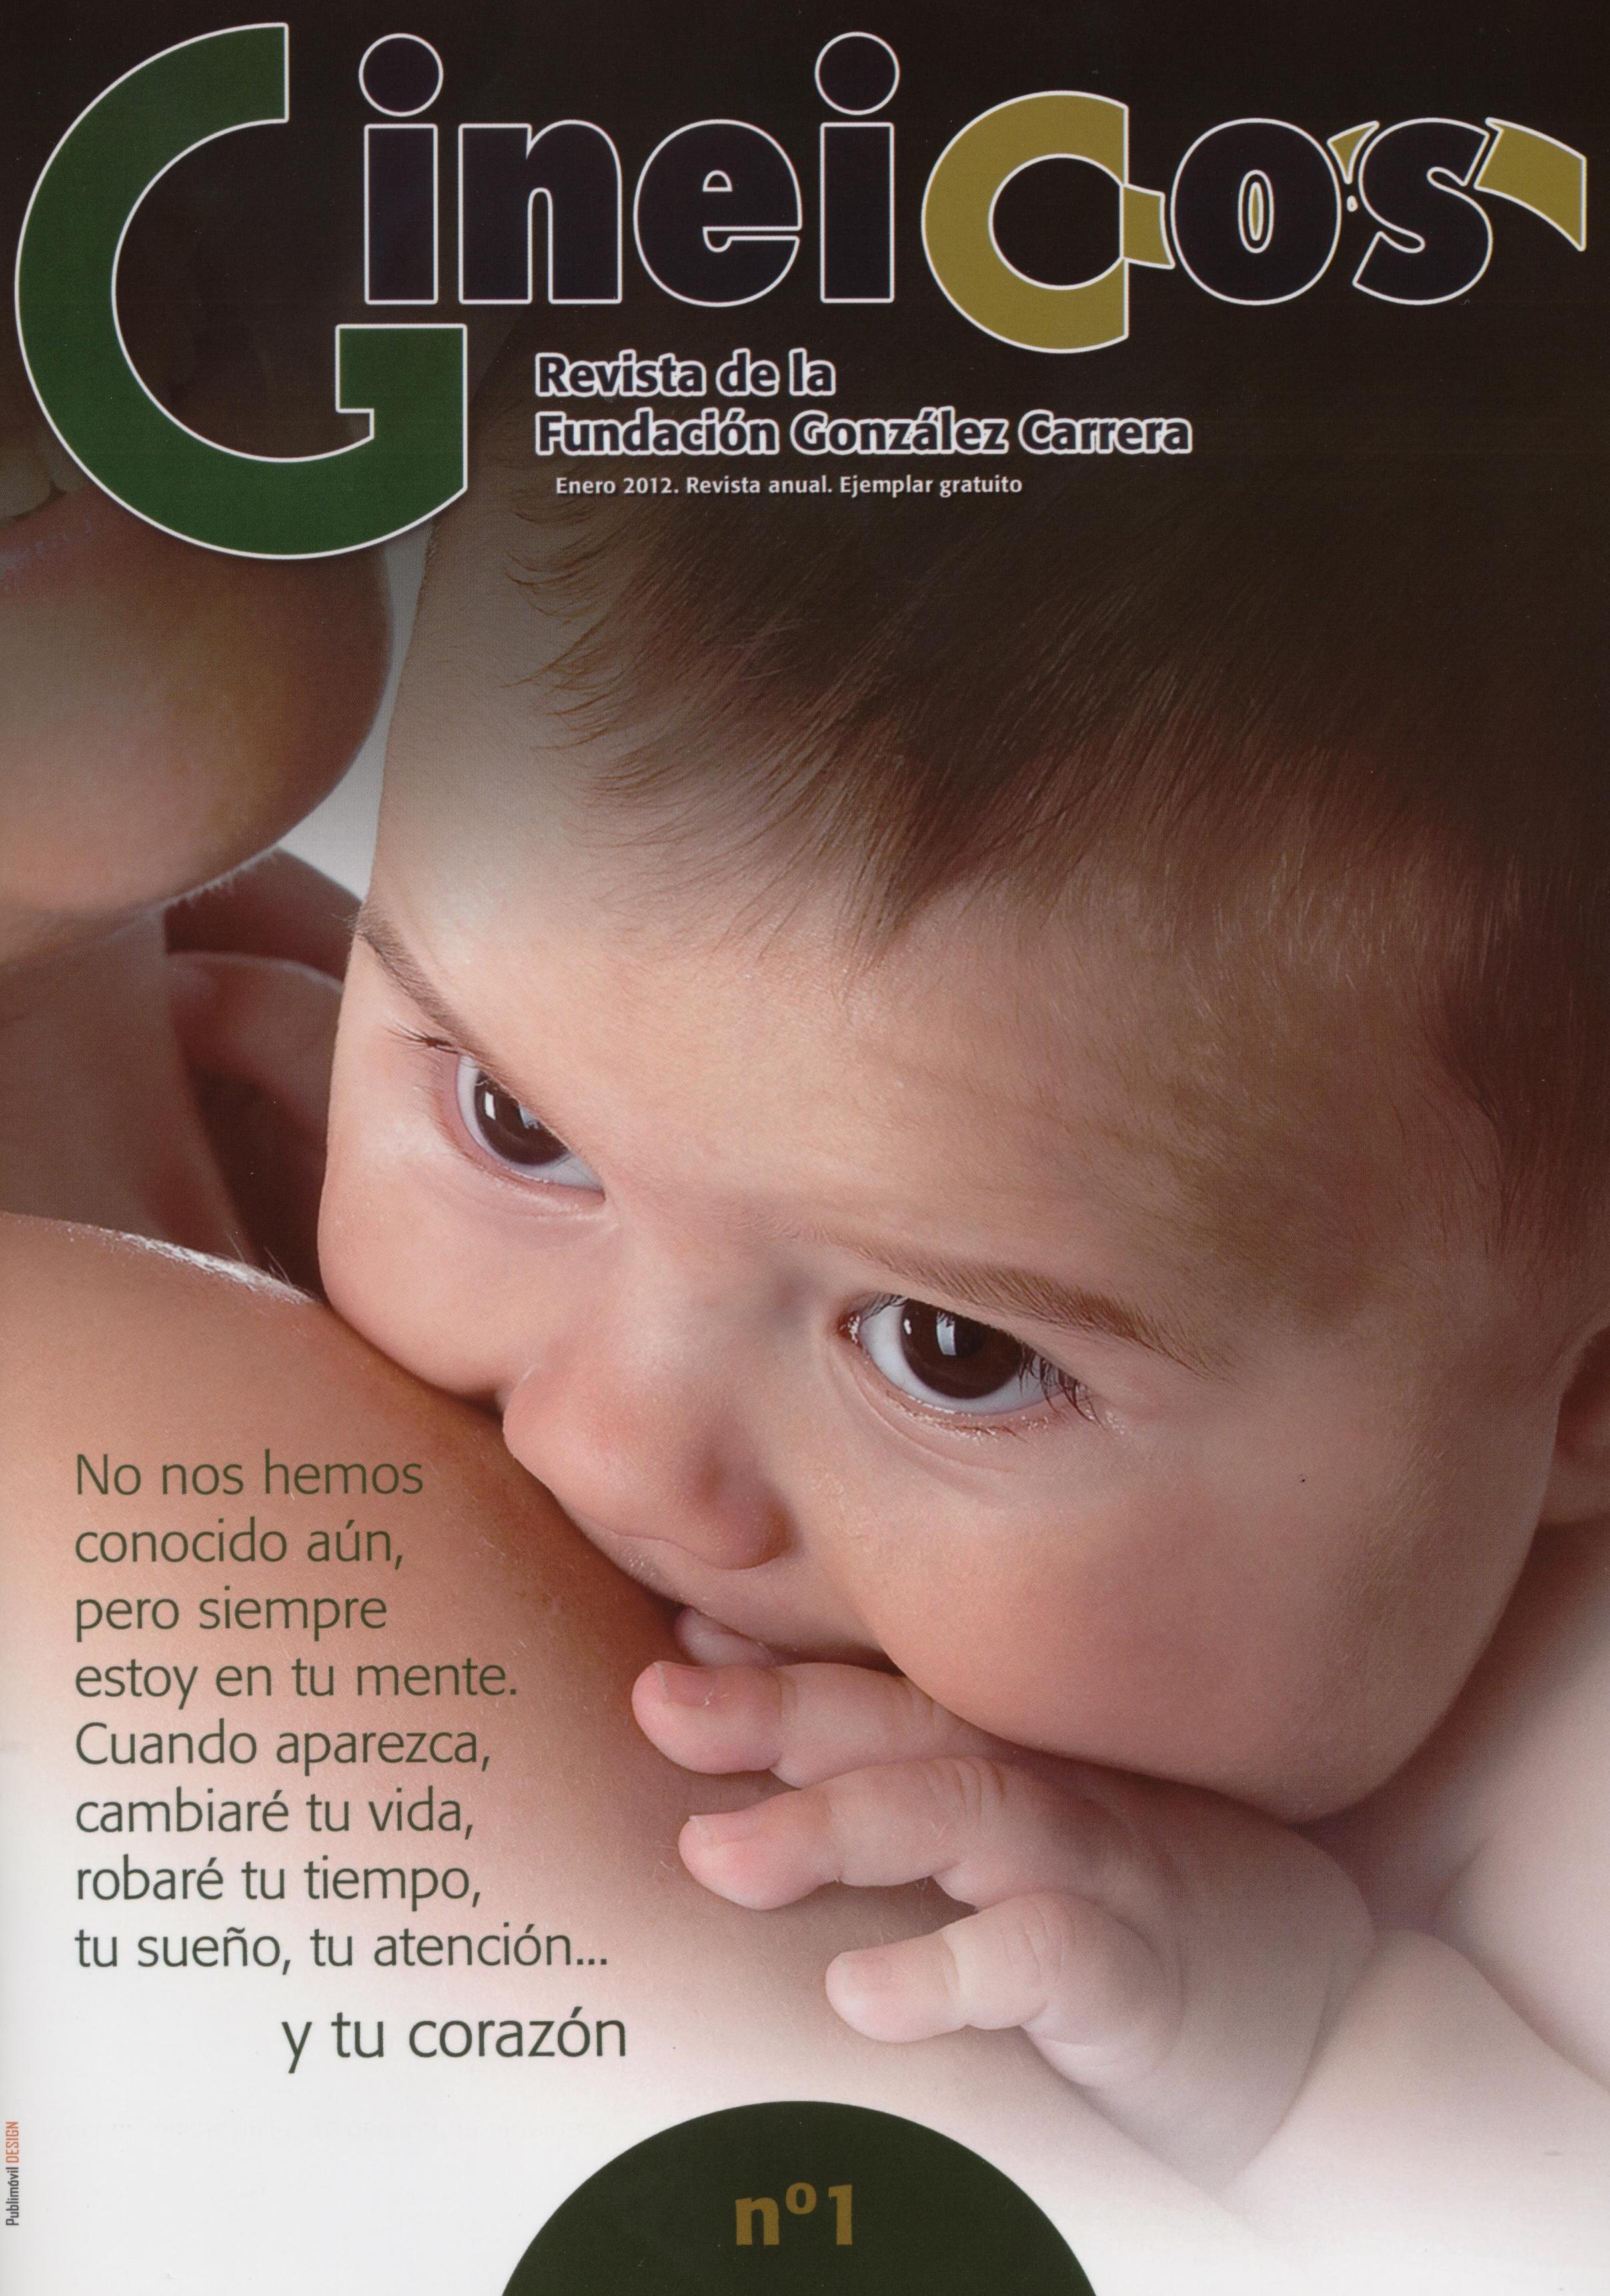 La Fundación Ernesto González Carrera publica el Nº 1 de su Revista Gineicos